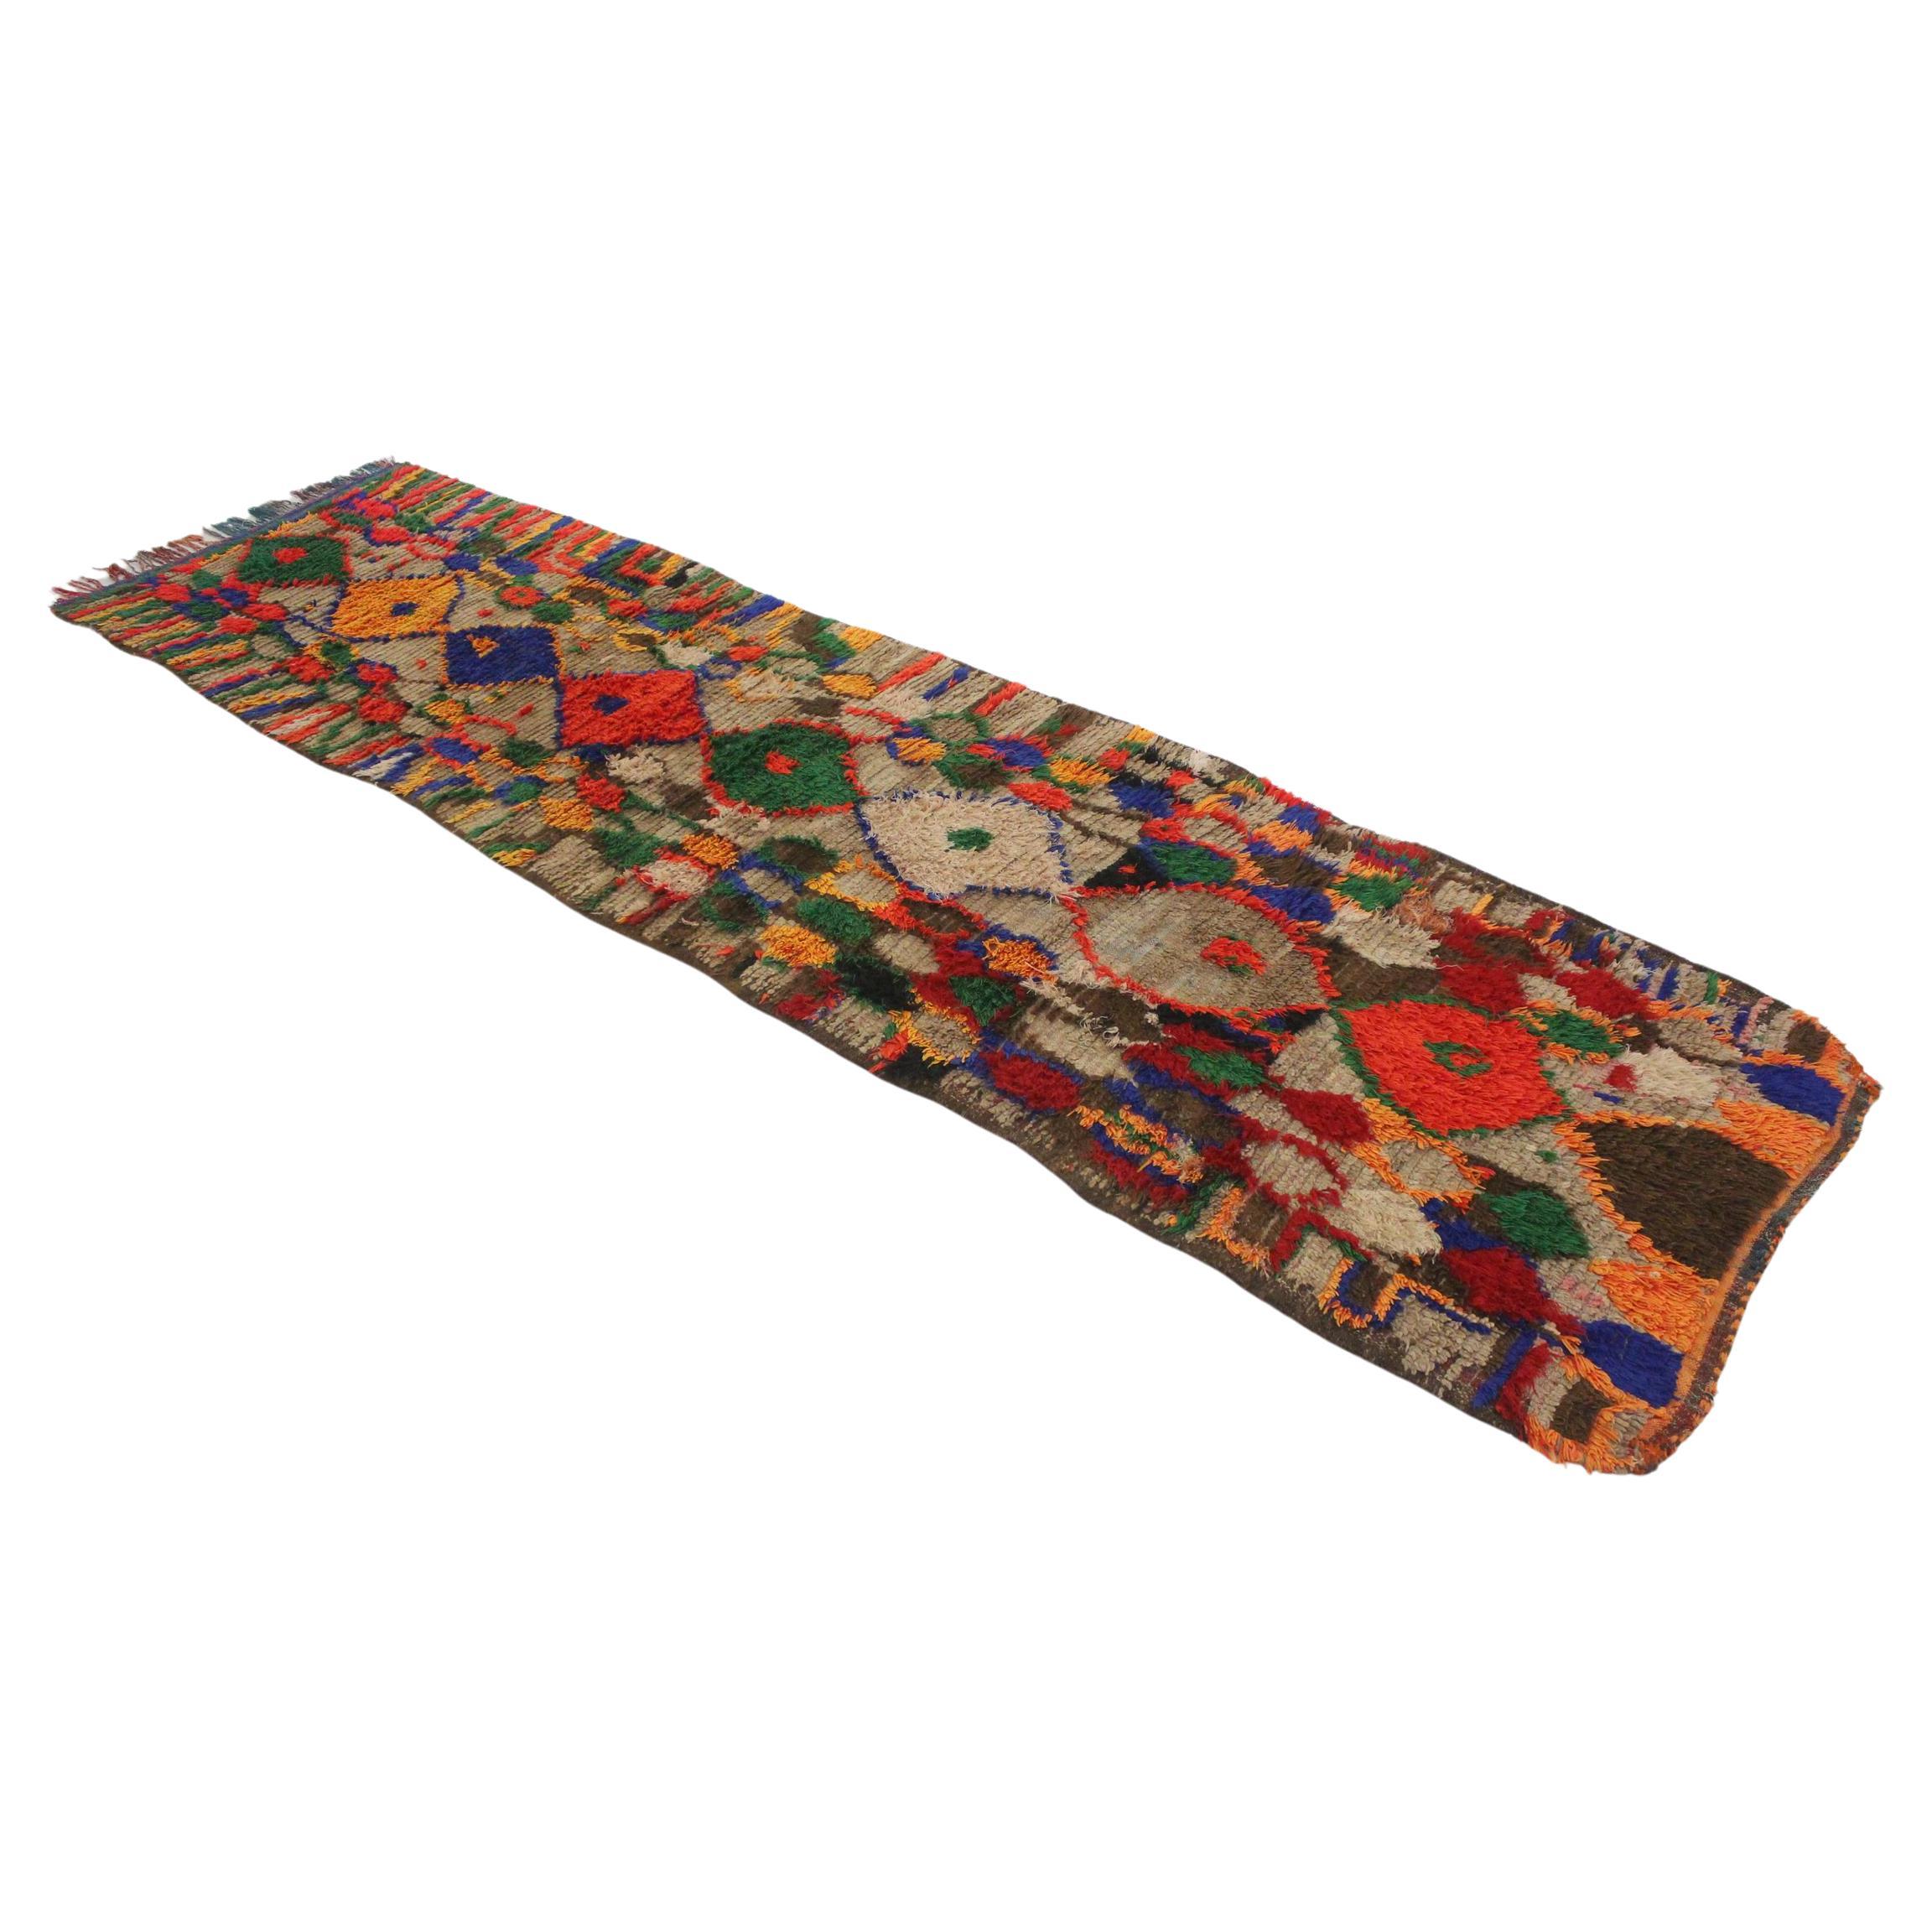 Vintage marokkanischen Boujad Läufer Teppich - Brown / Multicolor - 3.6x12.3feet / 109x377cm